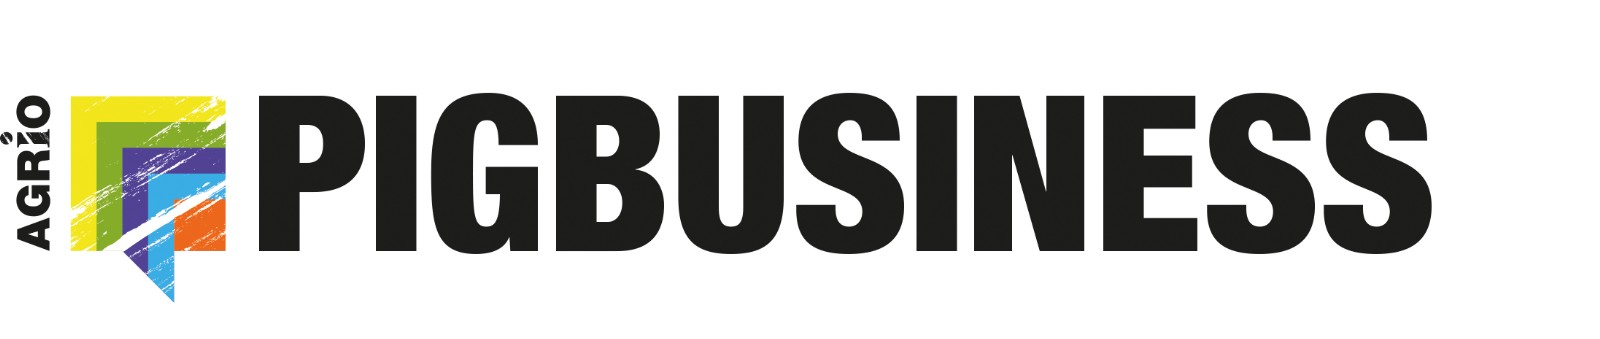 Pig Business logo